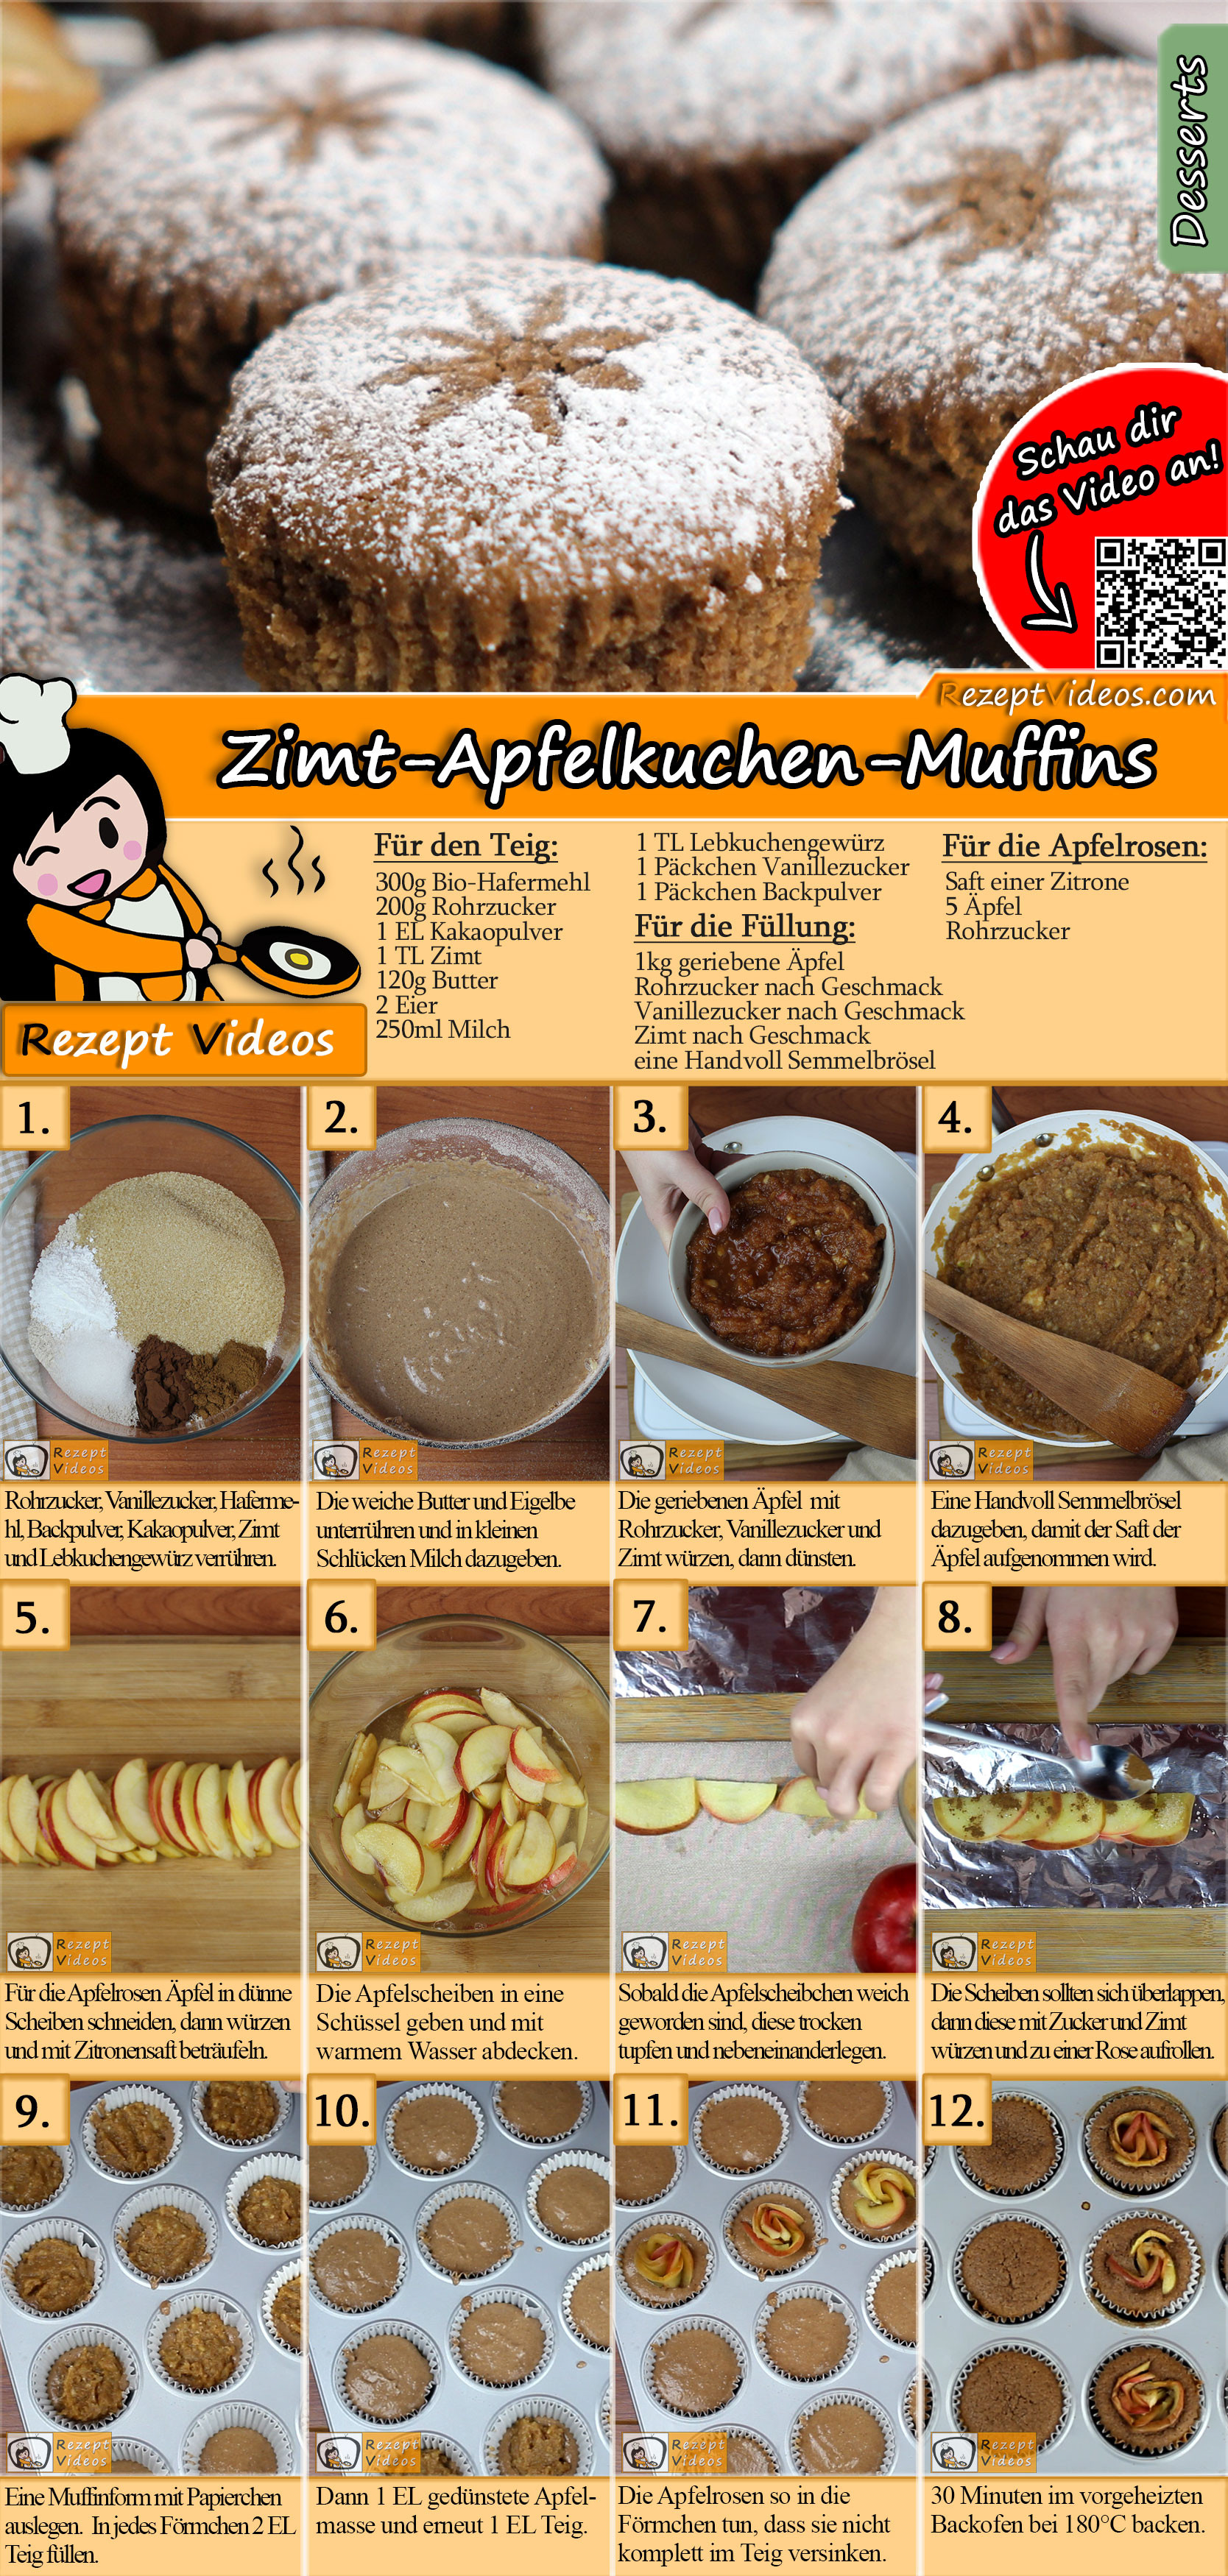 Zimt-Apfelkuchen-Muffins Rezept mit Video